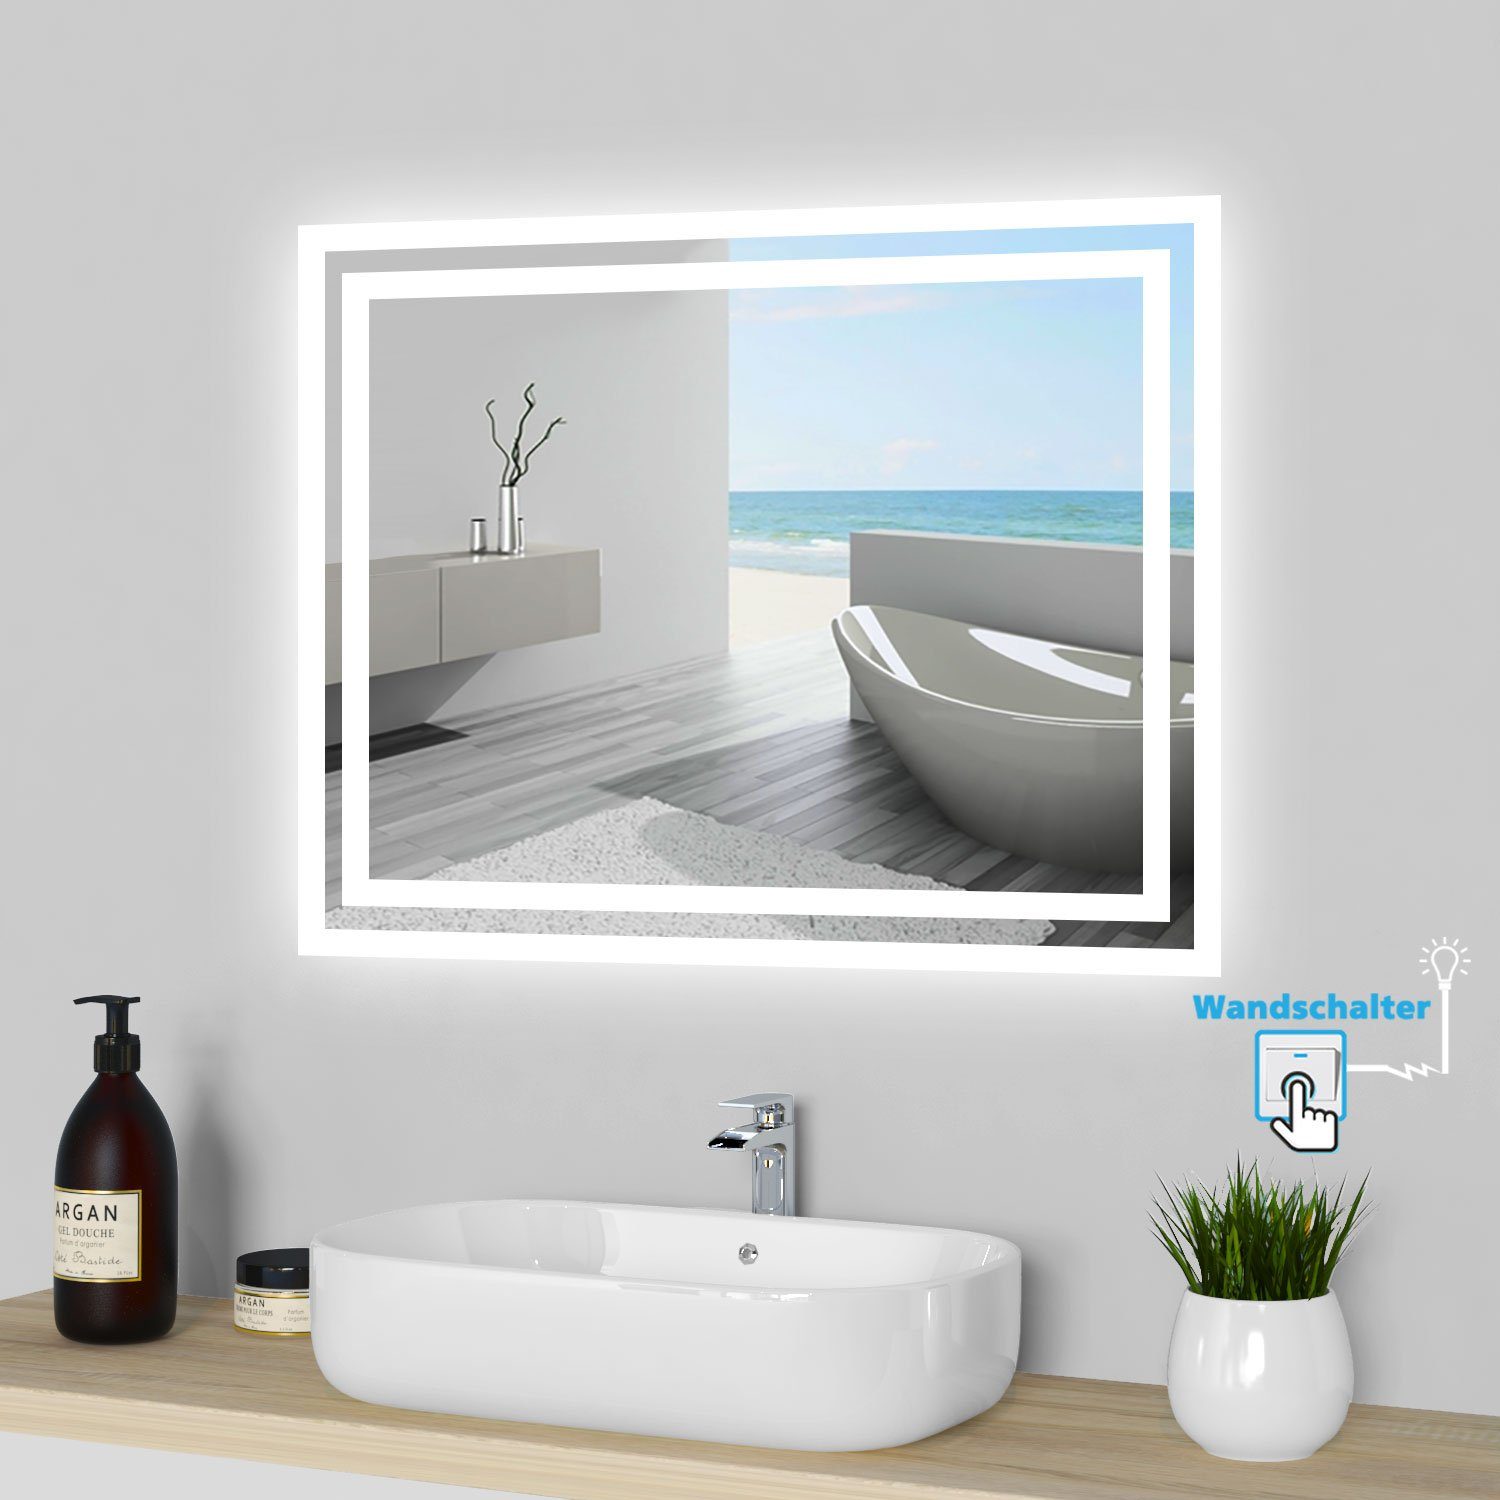 Wandschalter+Beschlagfrei 60x50 160x80 Beleuchtung mit Badspiegel bis LED cm, Spiegel cm duschspa